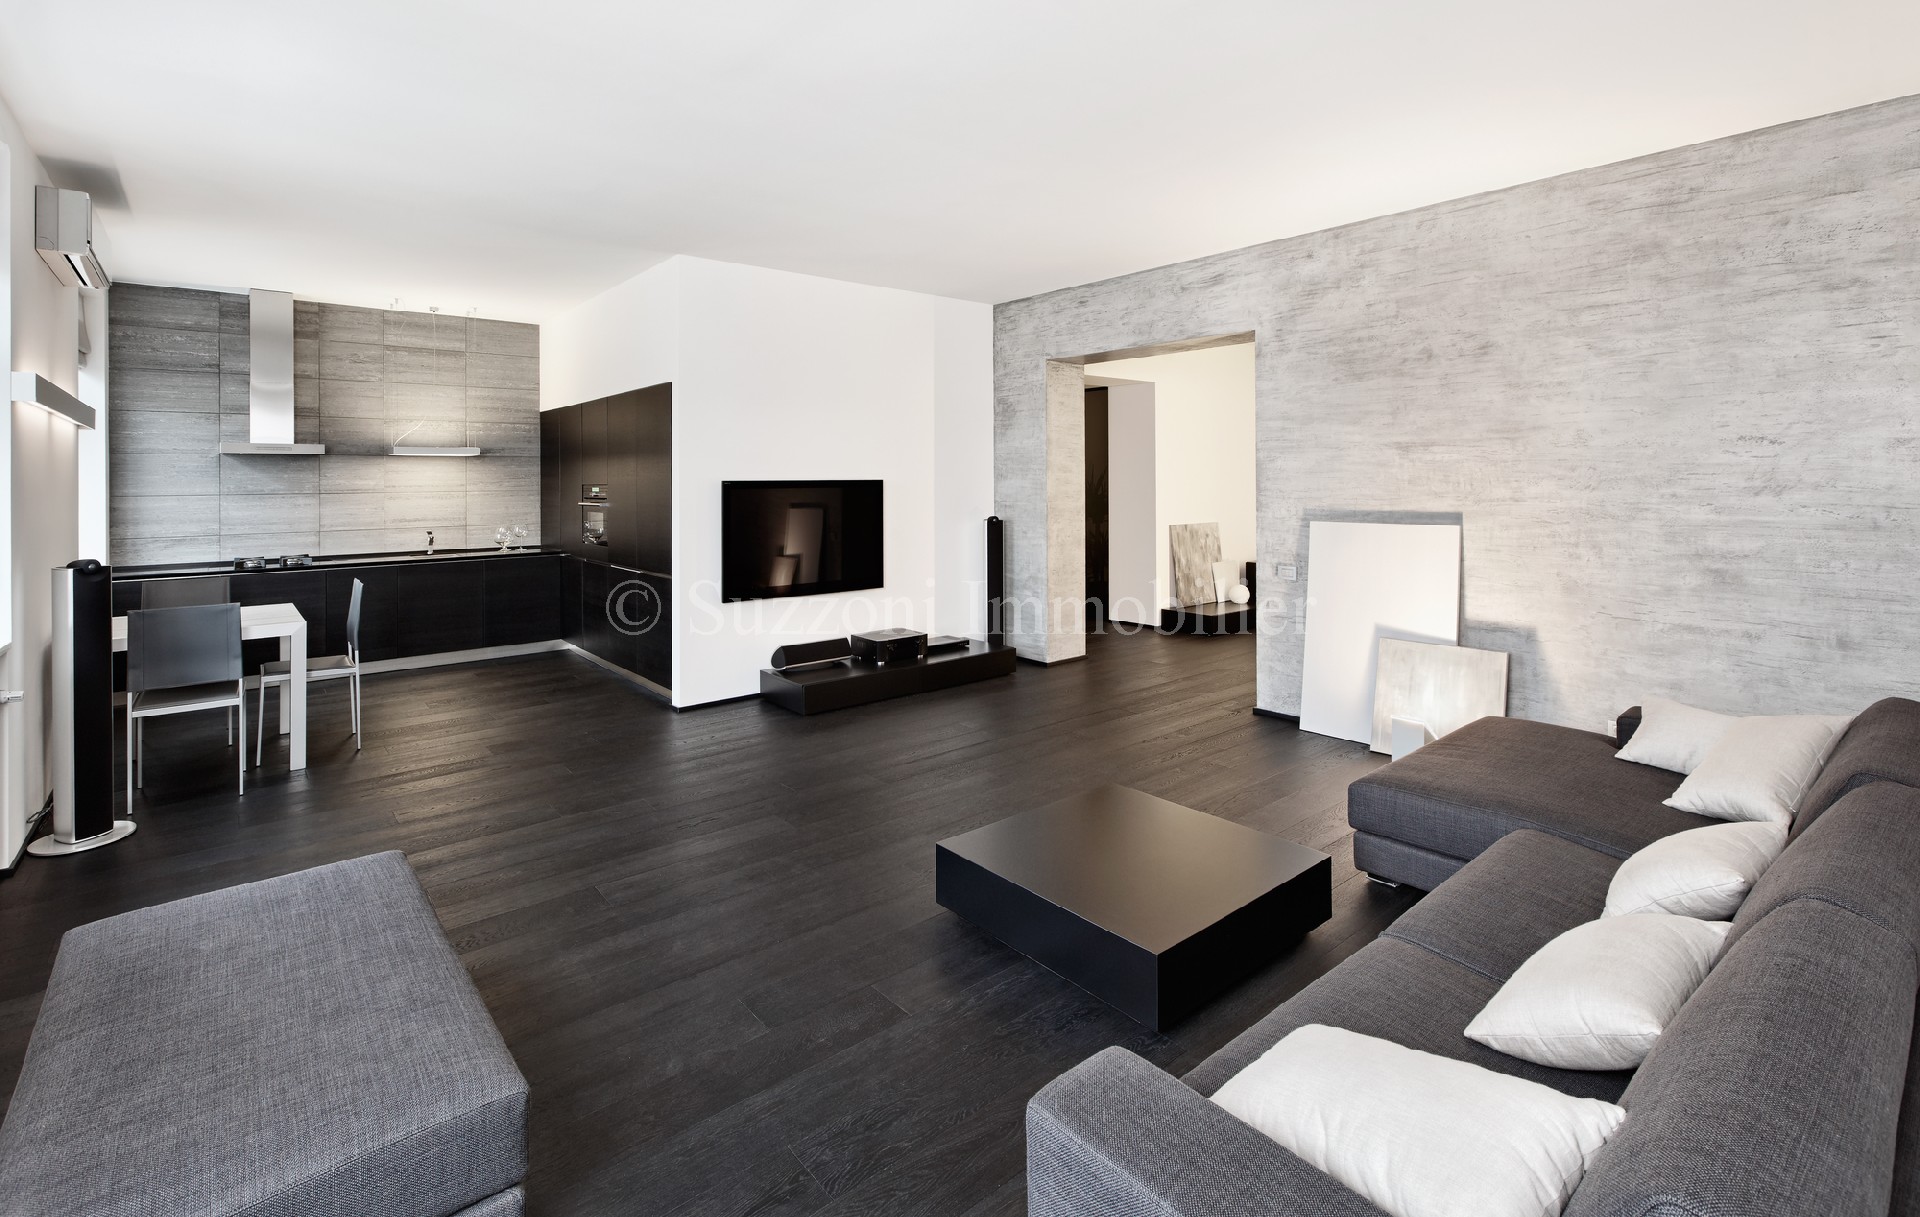 Apartment A property to buy, LA VALETTE DU VAR, 64 m², 3 rooms